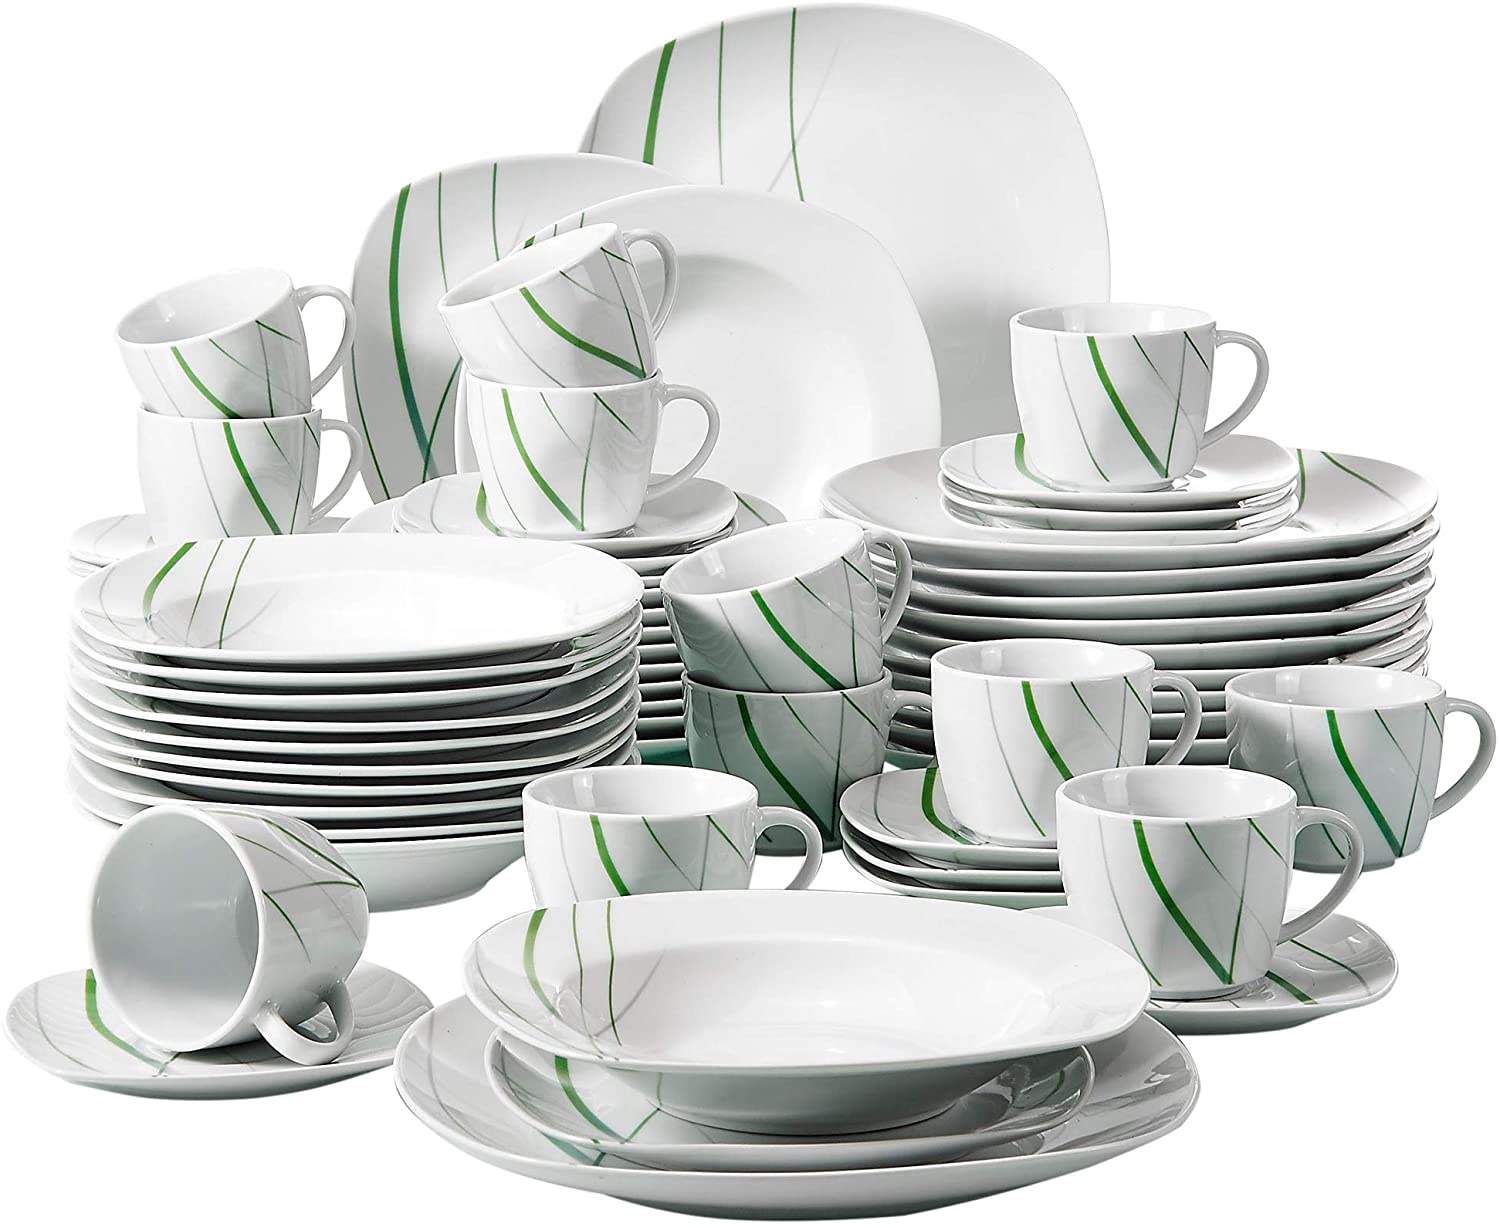 Veweet Aviva Porcelain Dinner Service Set 30 Pieces / 60 Pieces Dinner Service Set and Multiple Peripheral Products for Aviva Dinner Service